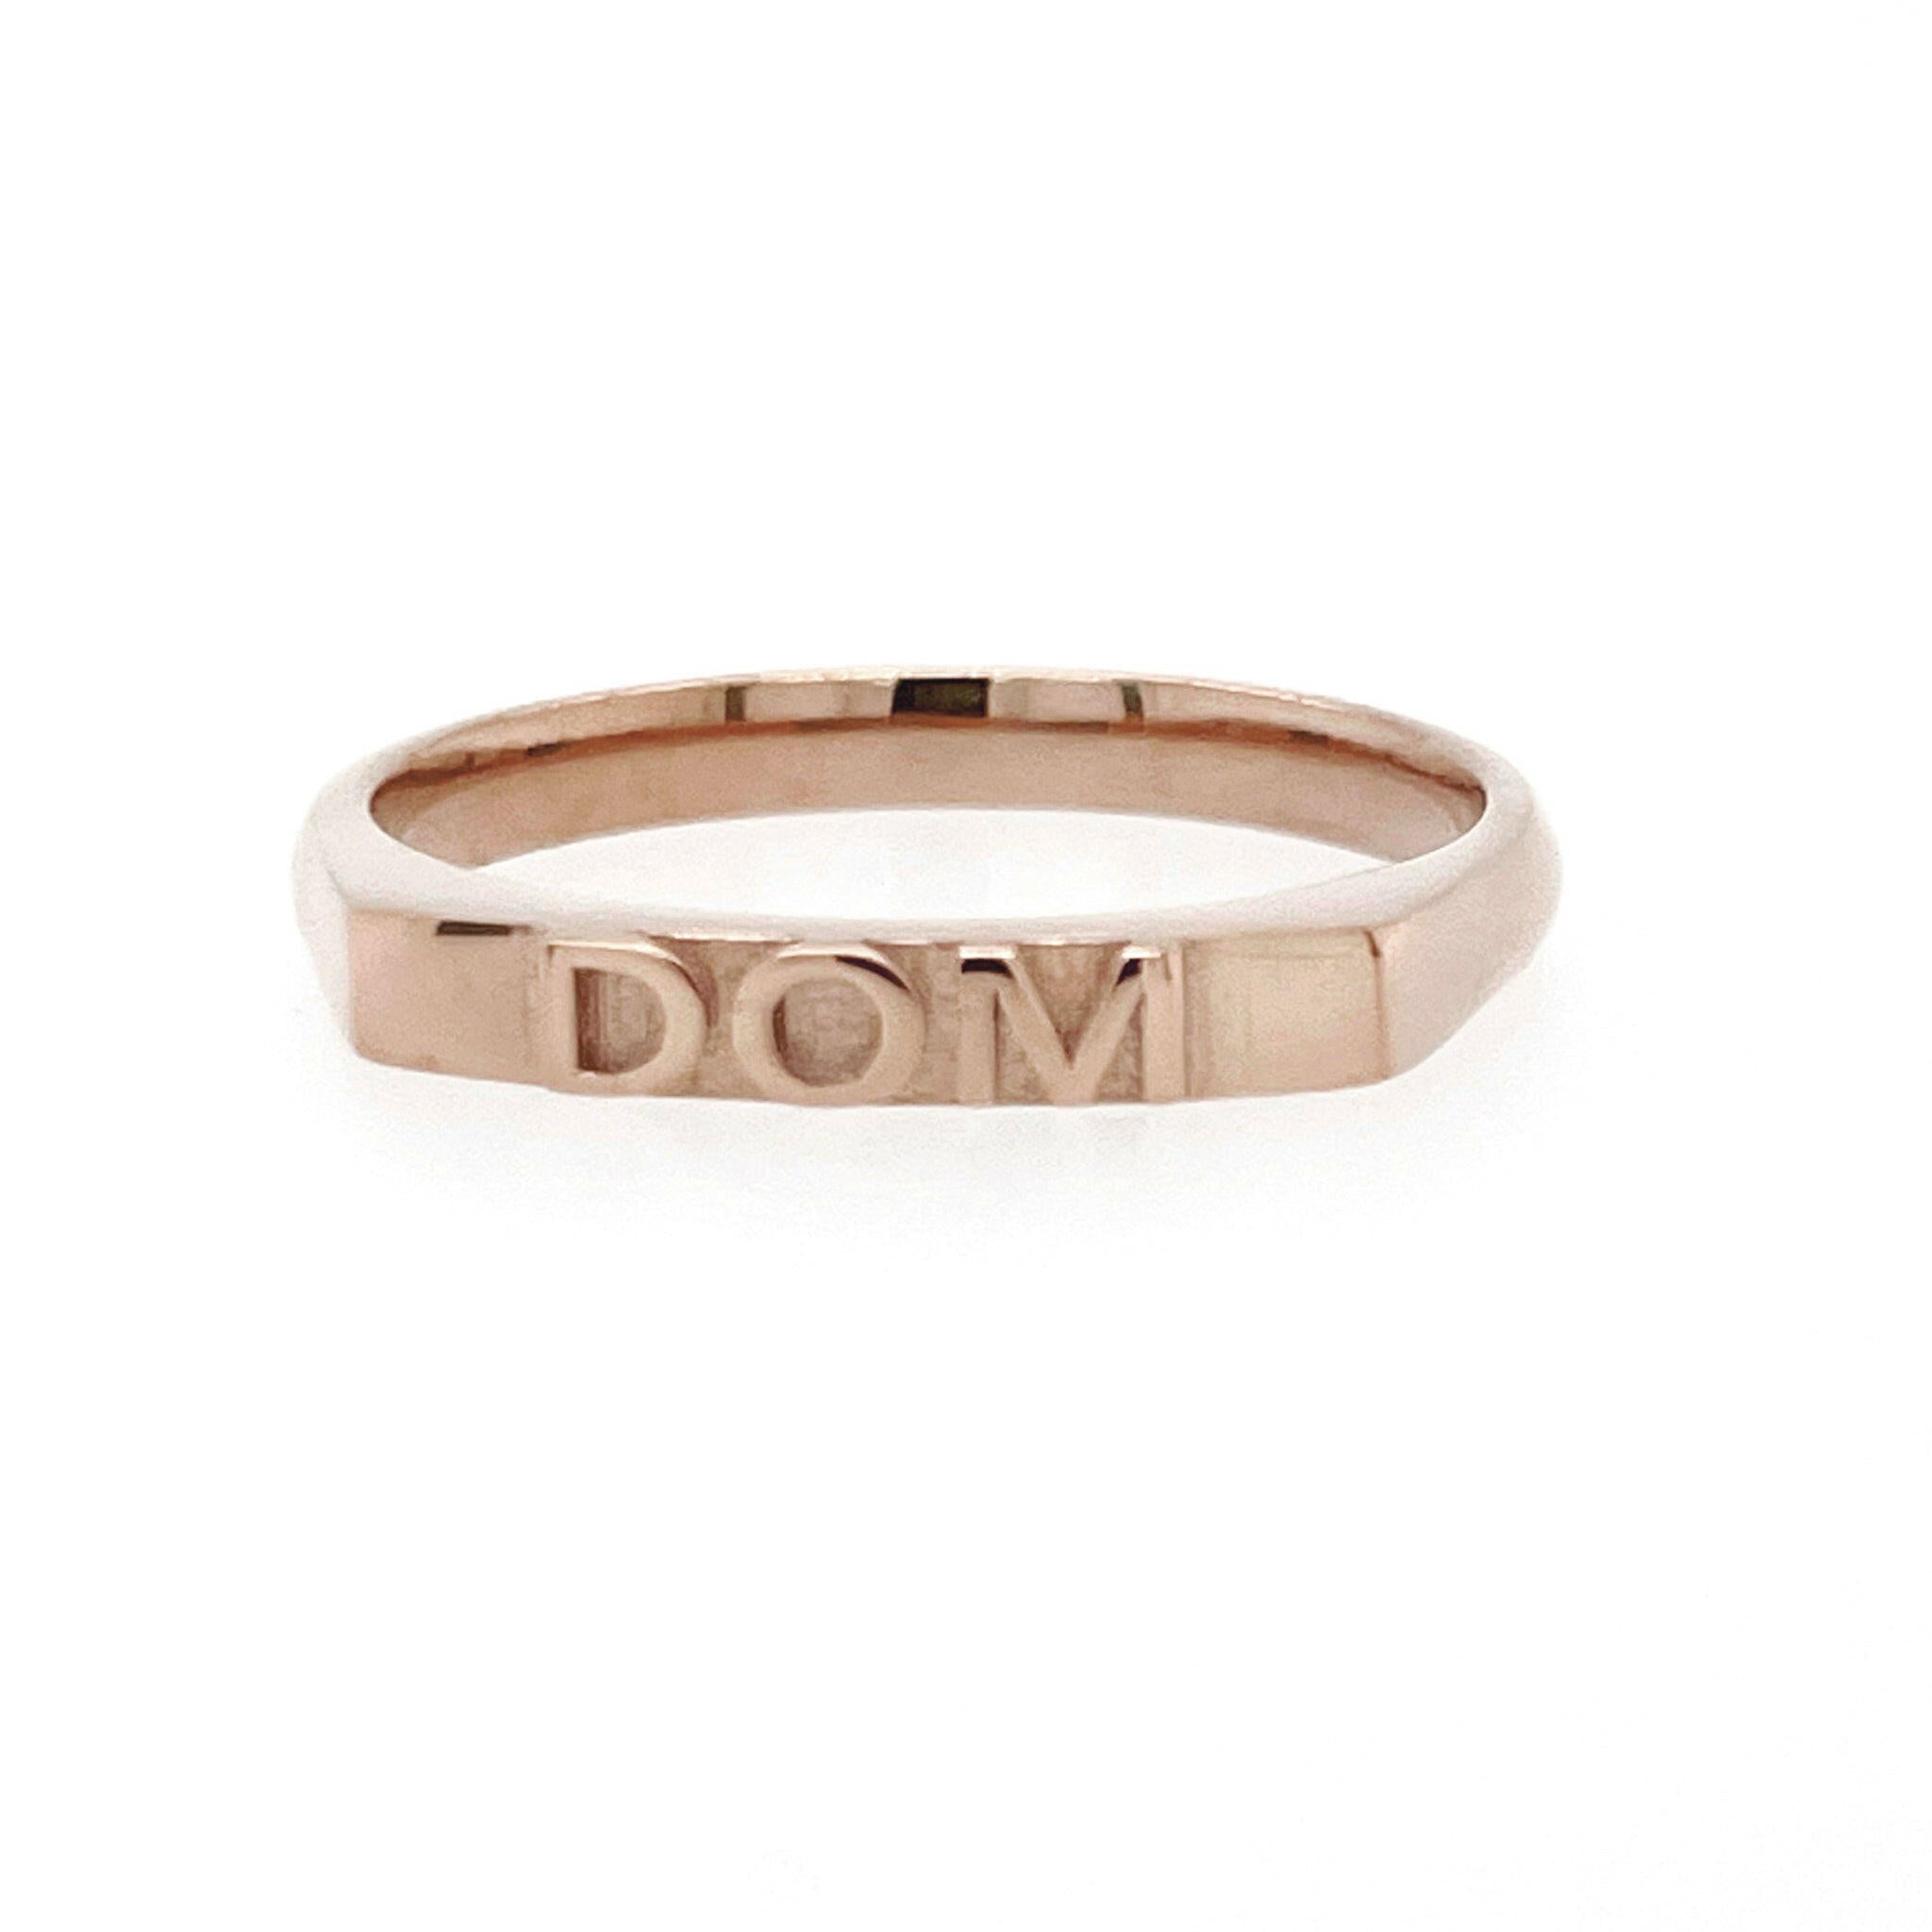 DOM - Ilah Cibis Jewelry-Rings